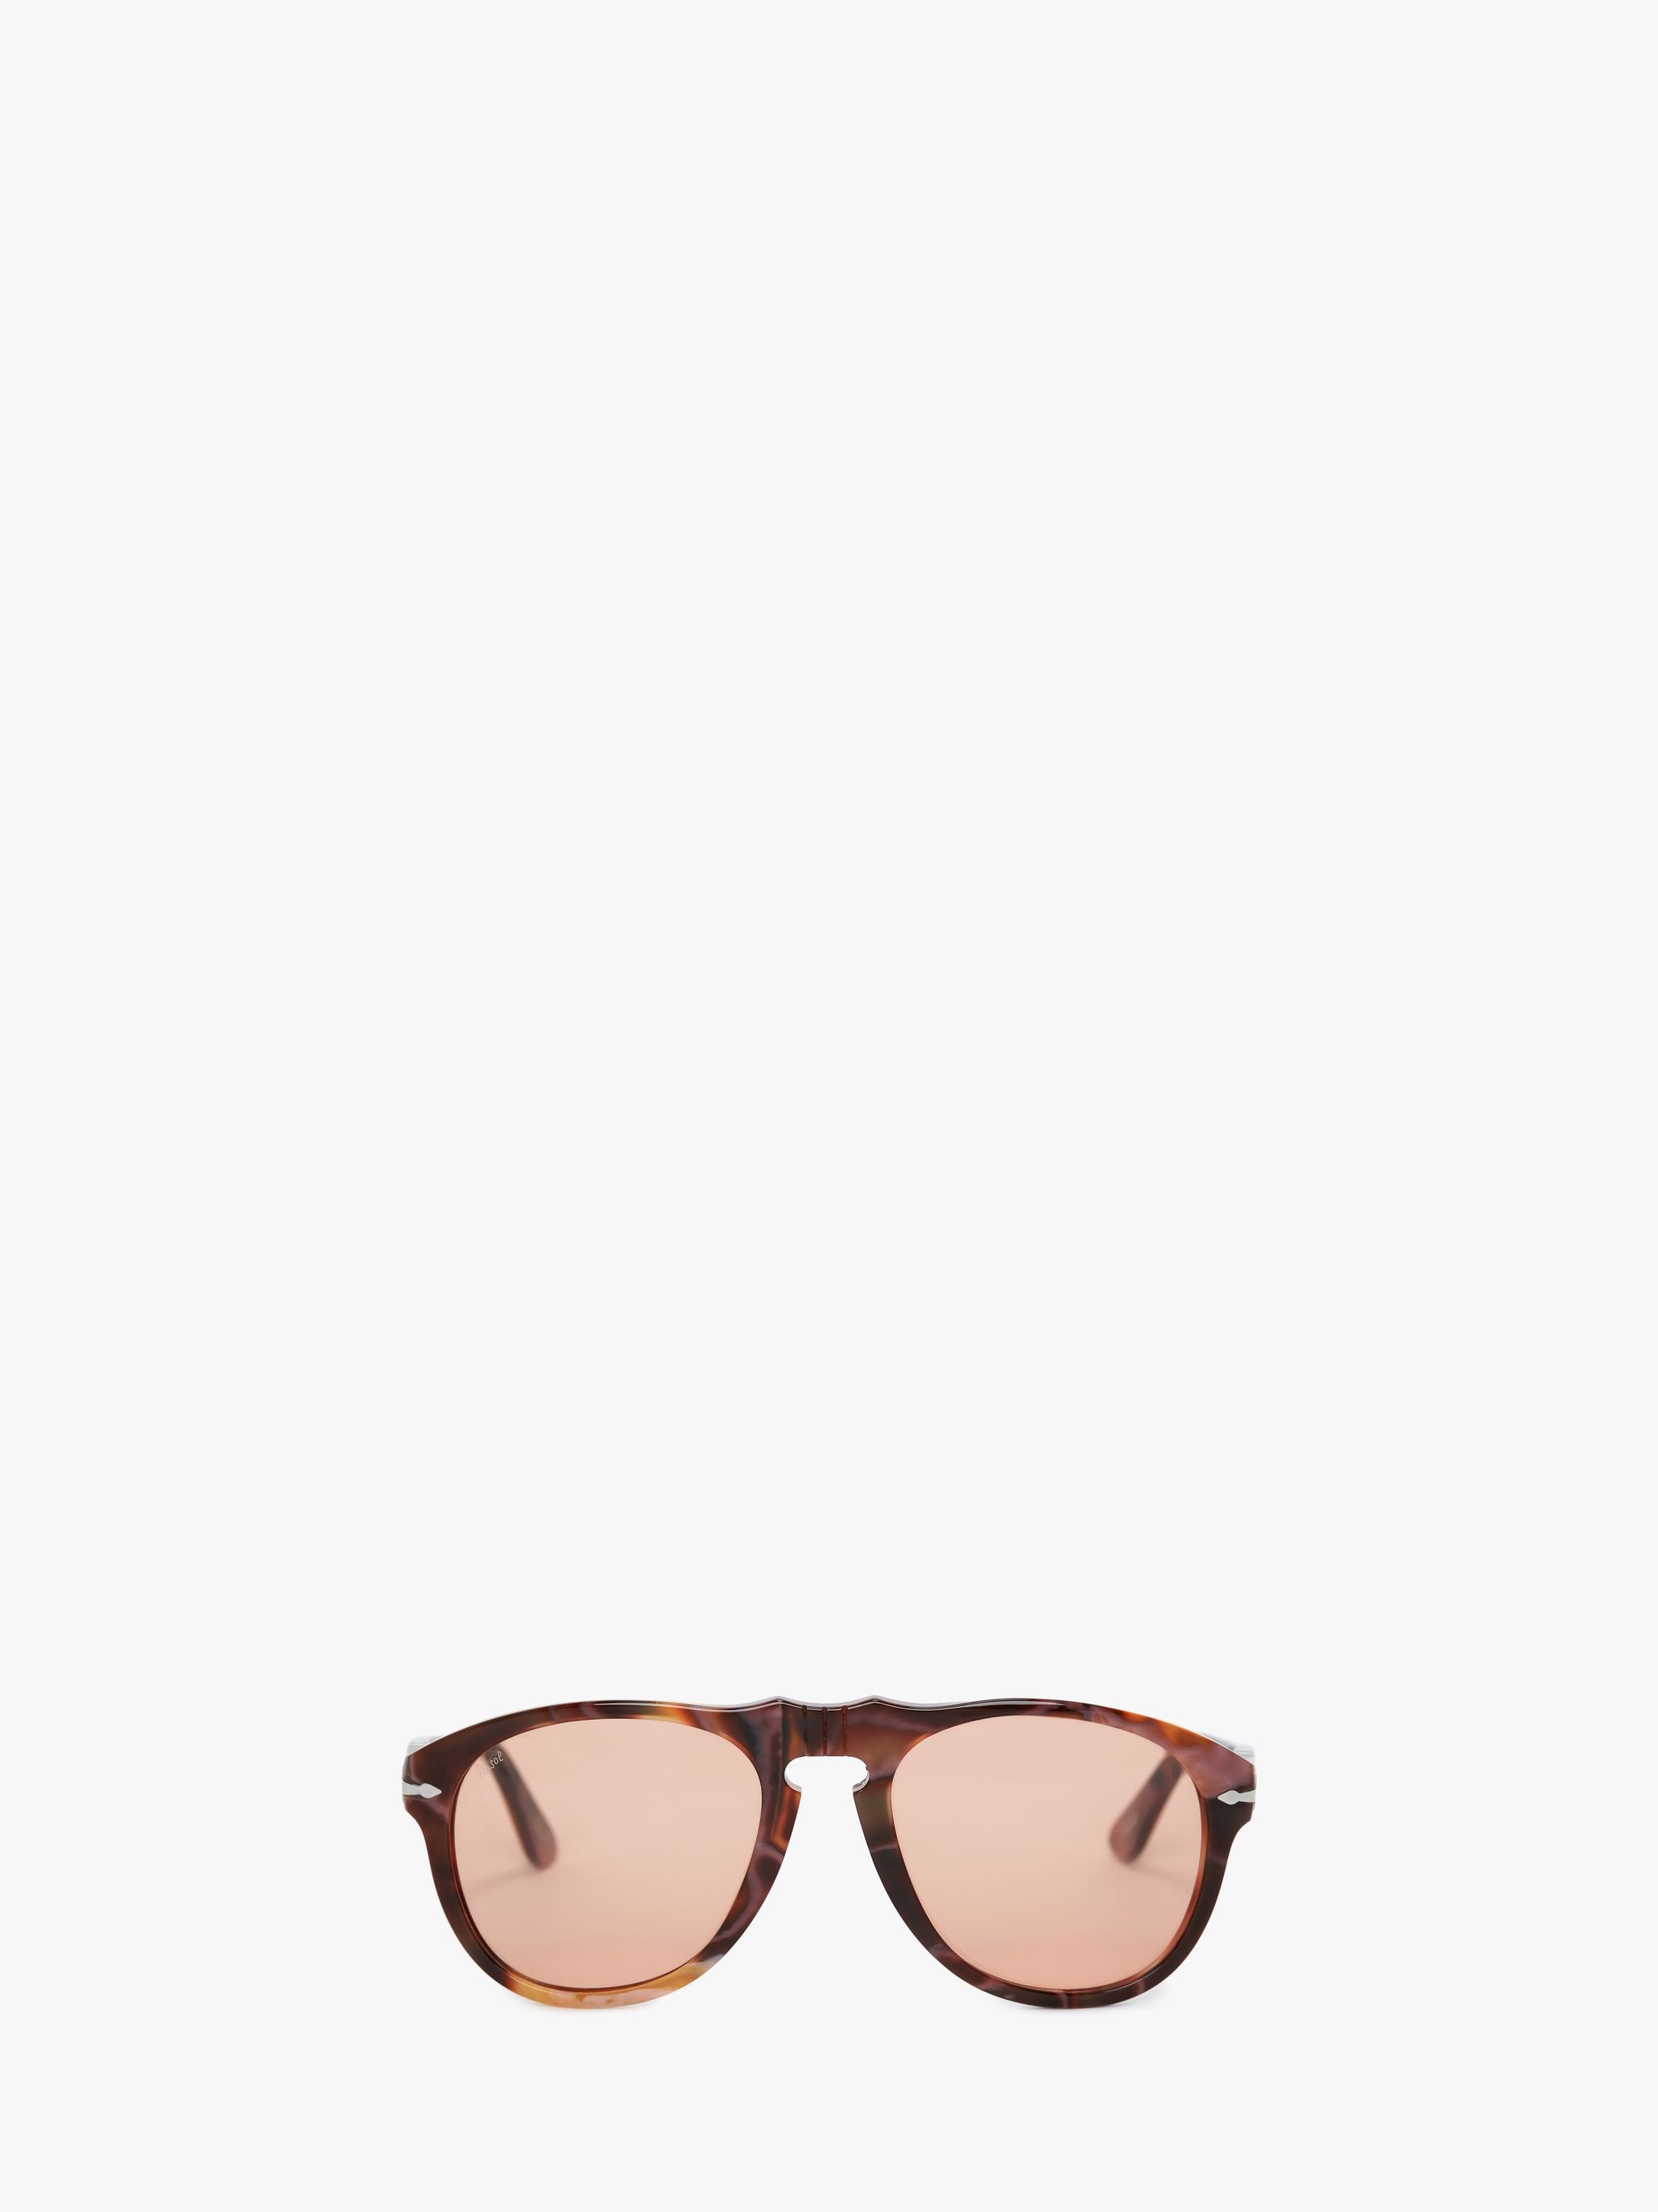 Солнцезащитные очки - авиатор JW Anderson, коричневый солнцезащитные очки boss авиаторы оправа металл для мужчин серый